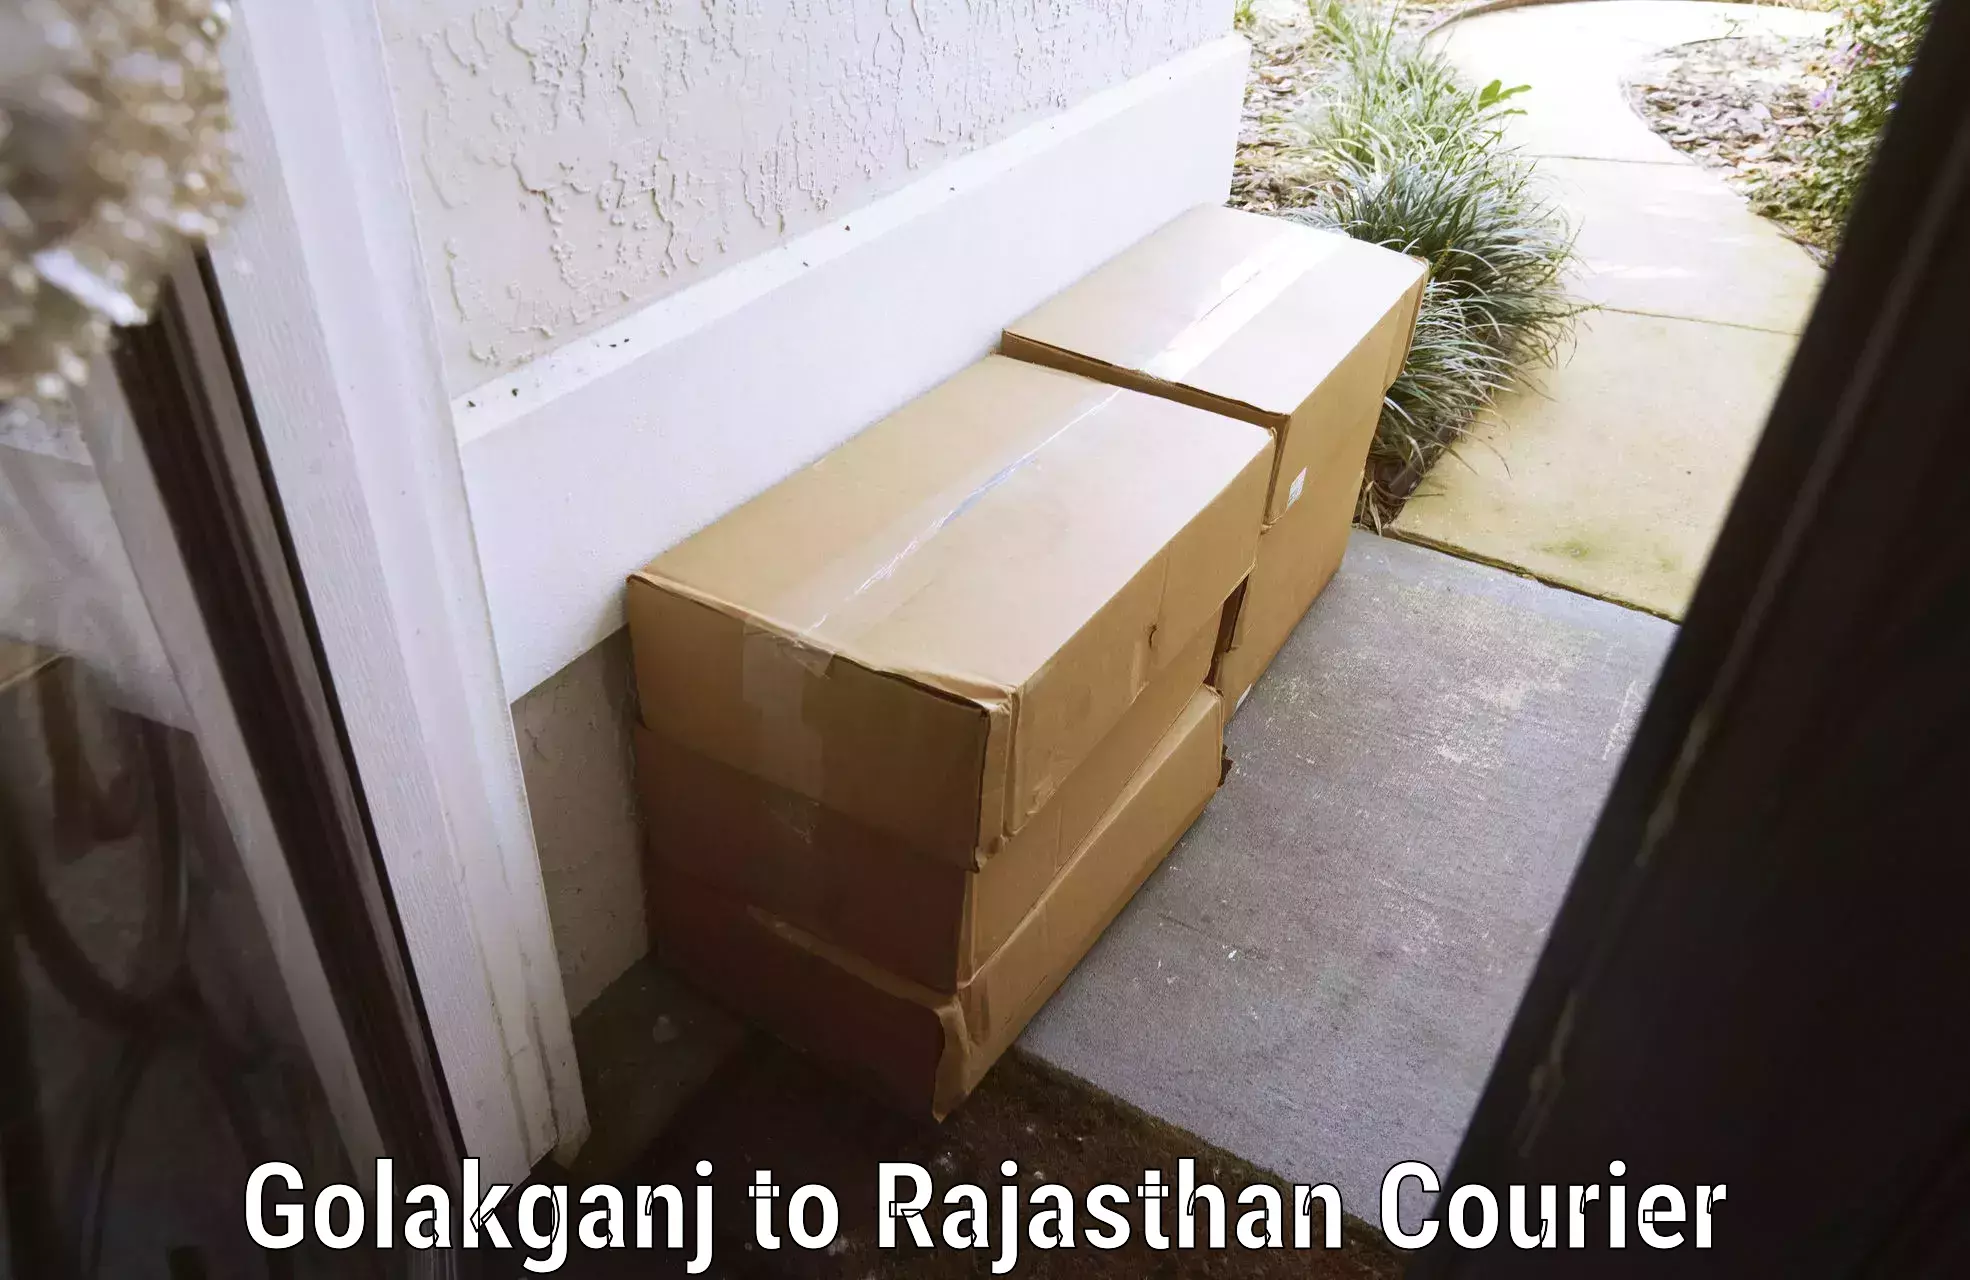 Baggage shipping quotes Golakganj to Bari Dholpur